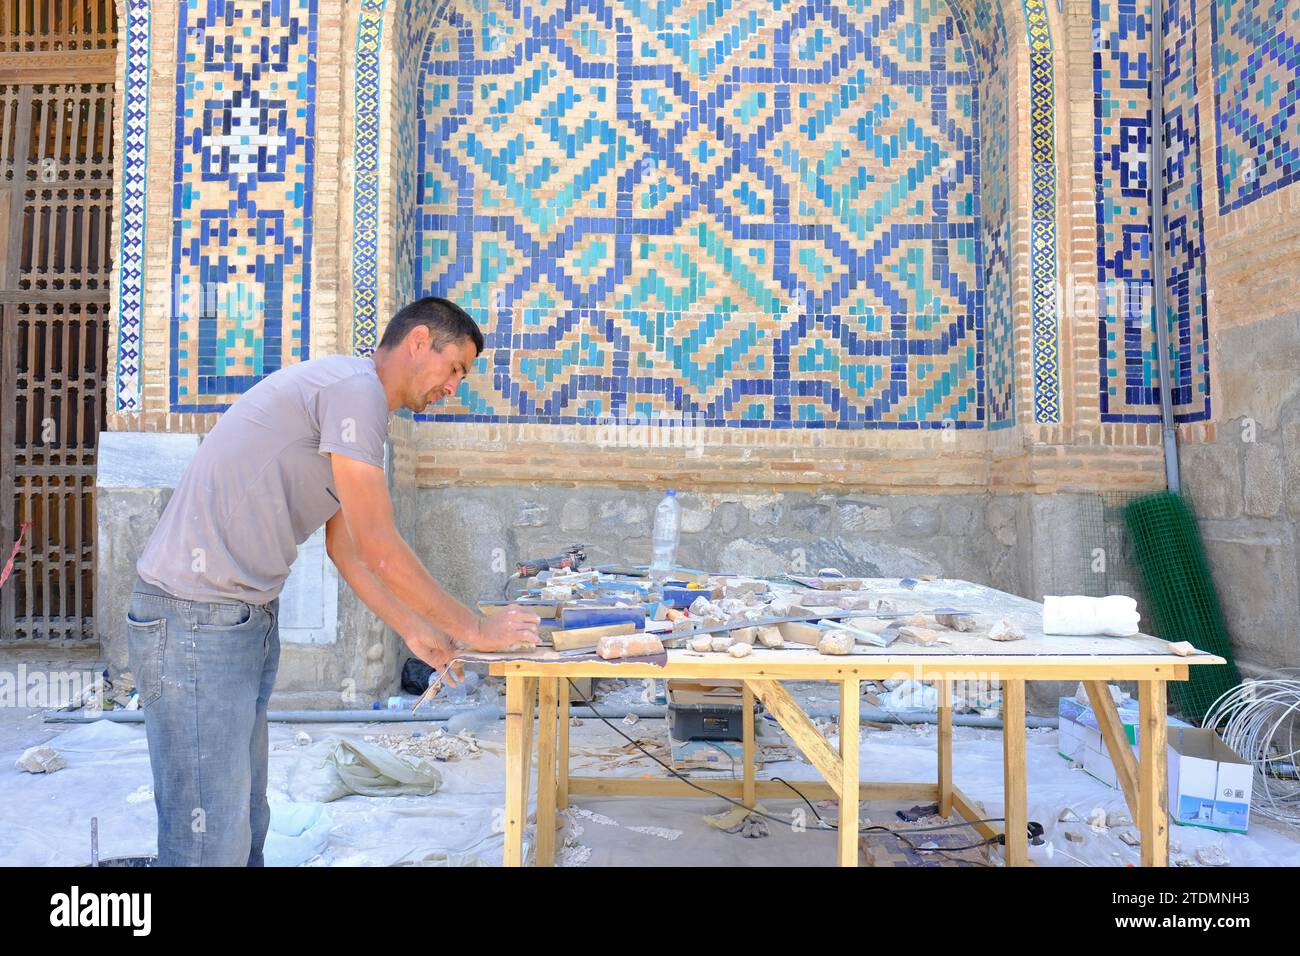 Lavoratori dell'Uzbekistan di Samarcanda che si preparano a rinnovare parti dei motivi decorati di piastrelle blu presso il Registan nell'agosto 2022 Foto Stock